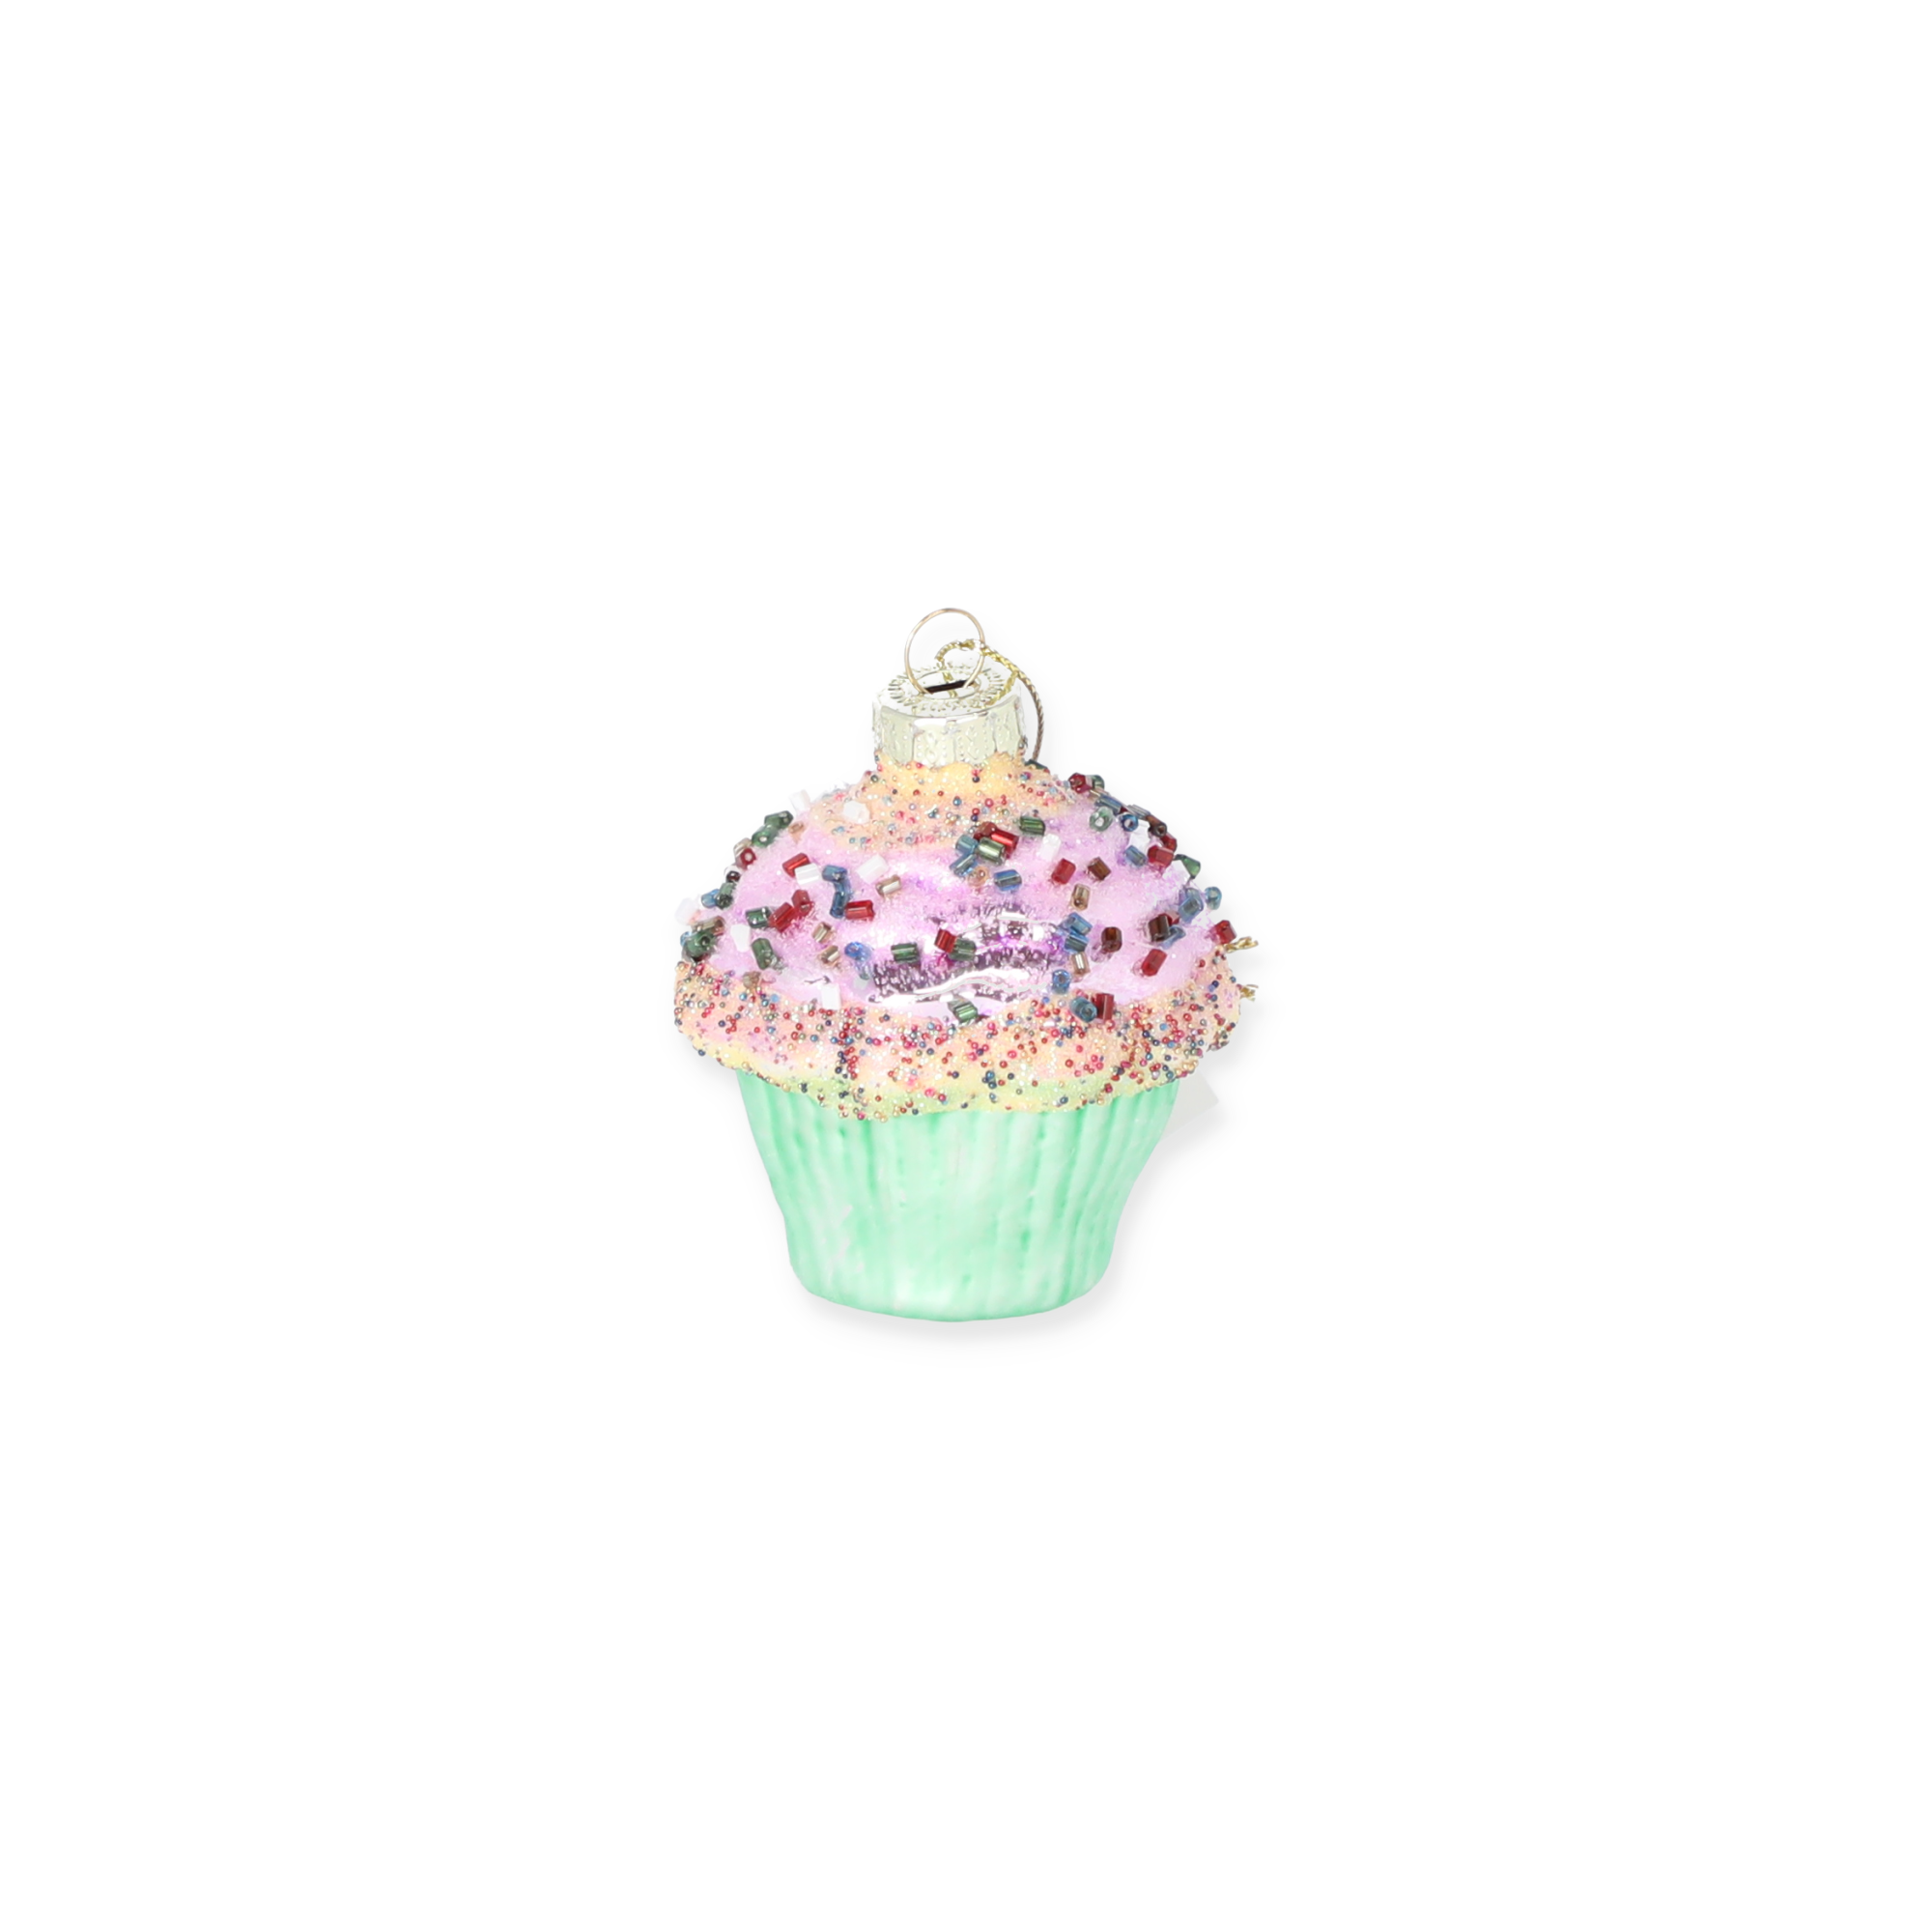 Christbaumschmuck Cupcake grün/rosa 6,4 x 6 cm + product picture